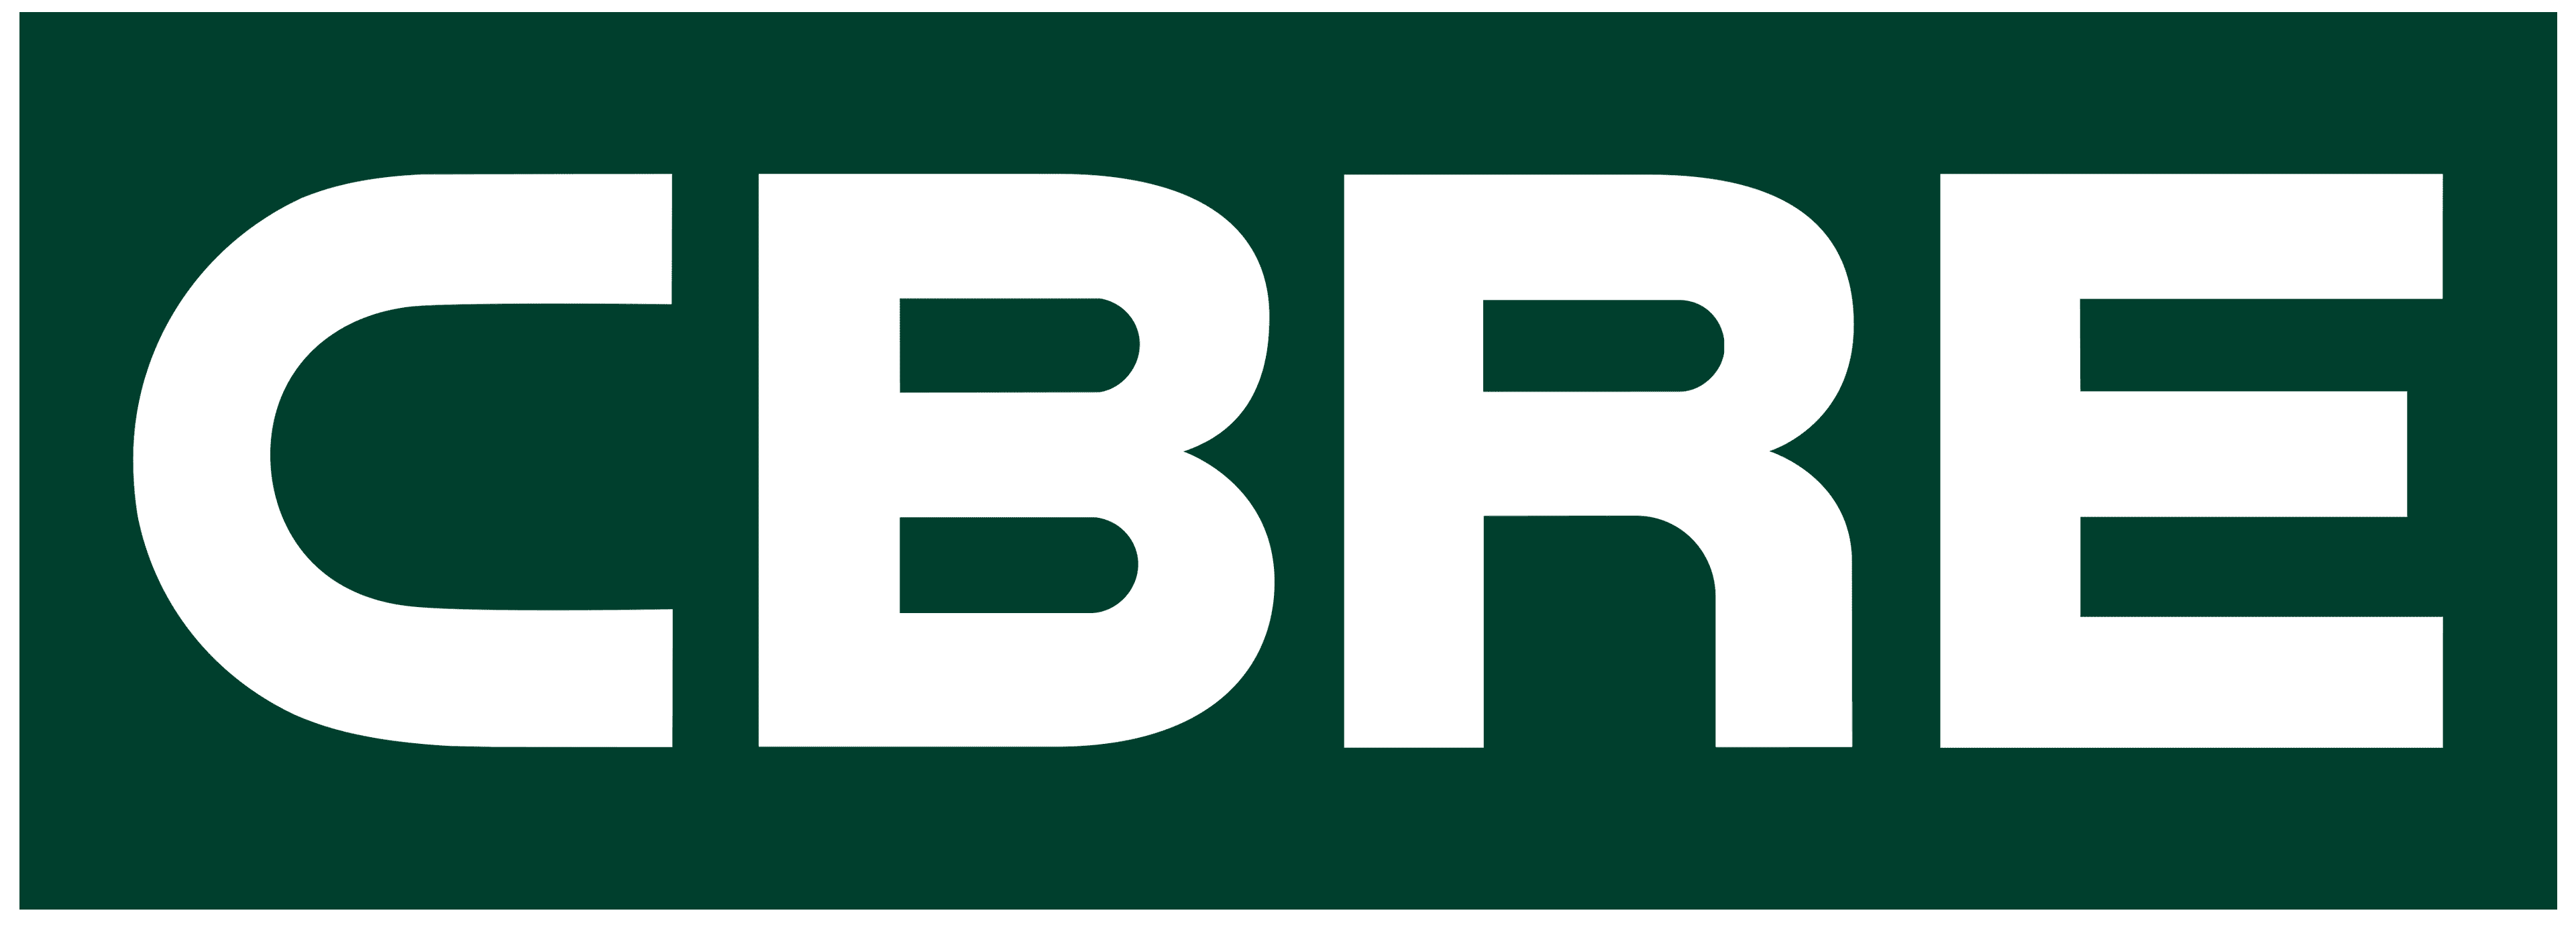 CBRE New Logo e1661964685855